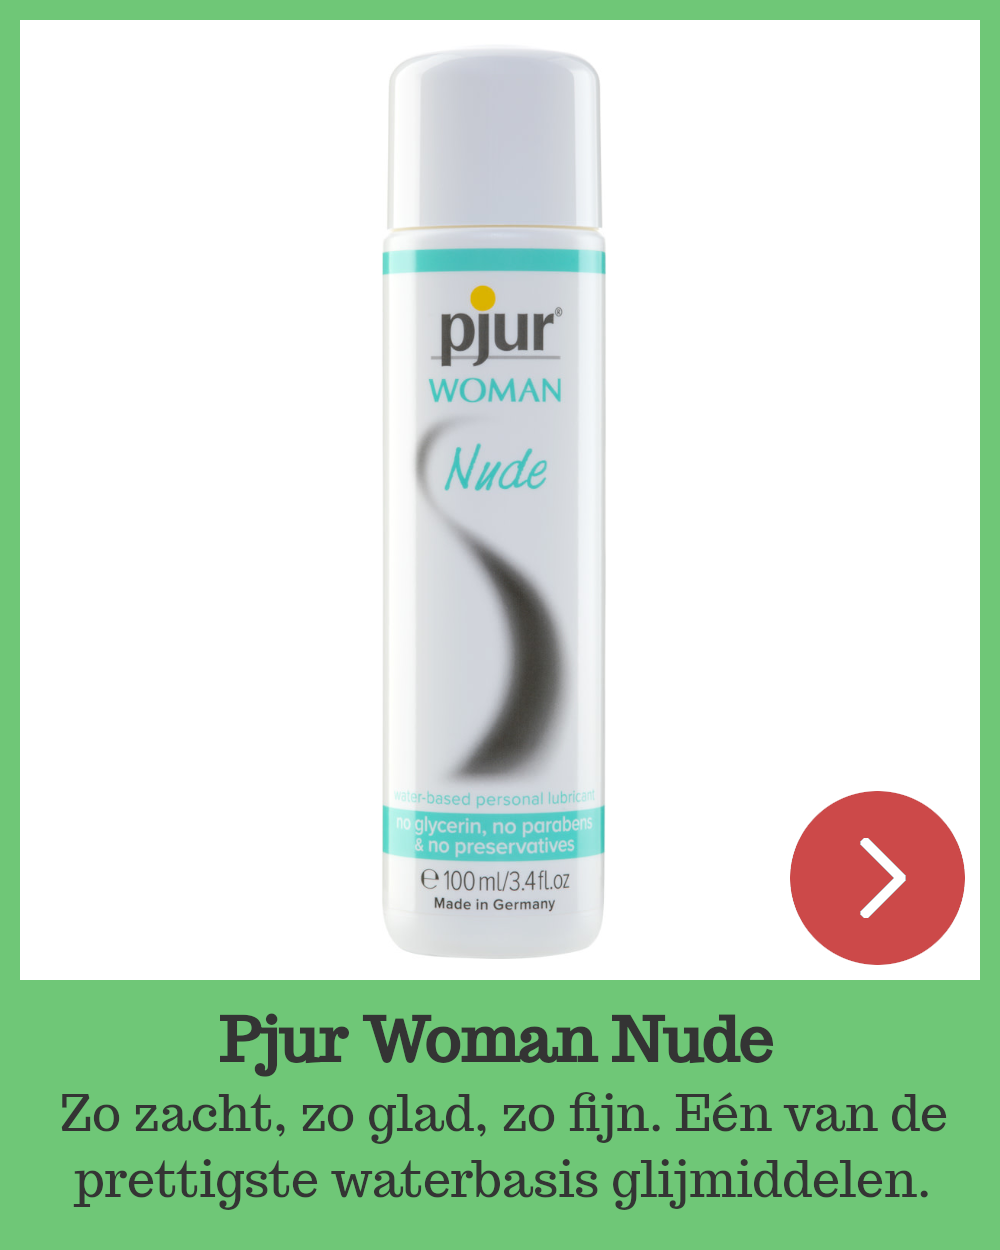 Pjur Woman Nude, waterbasis glijmiddel zonder toevoegingen.